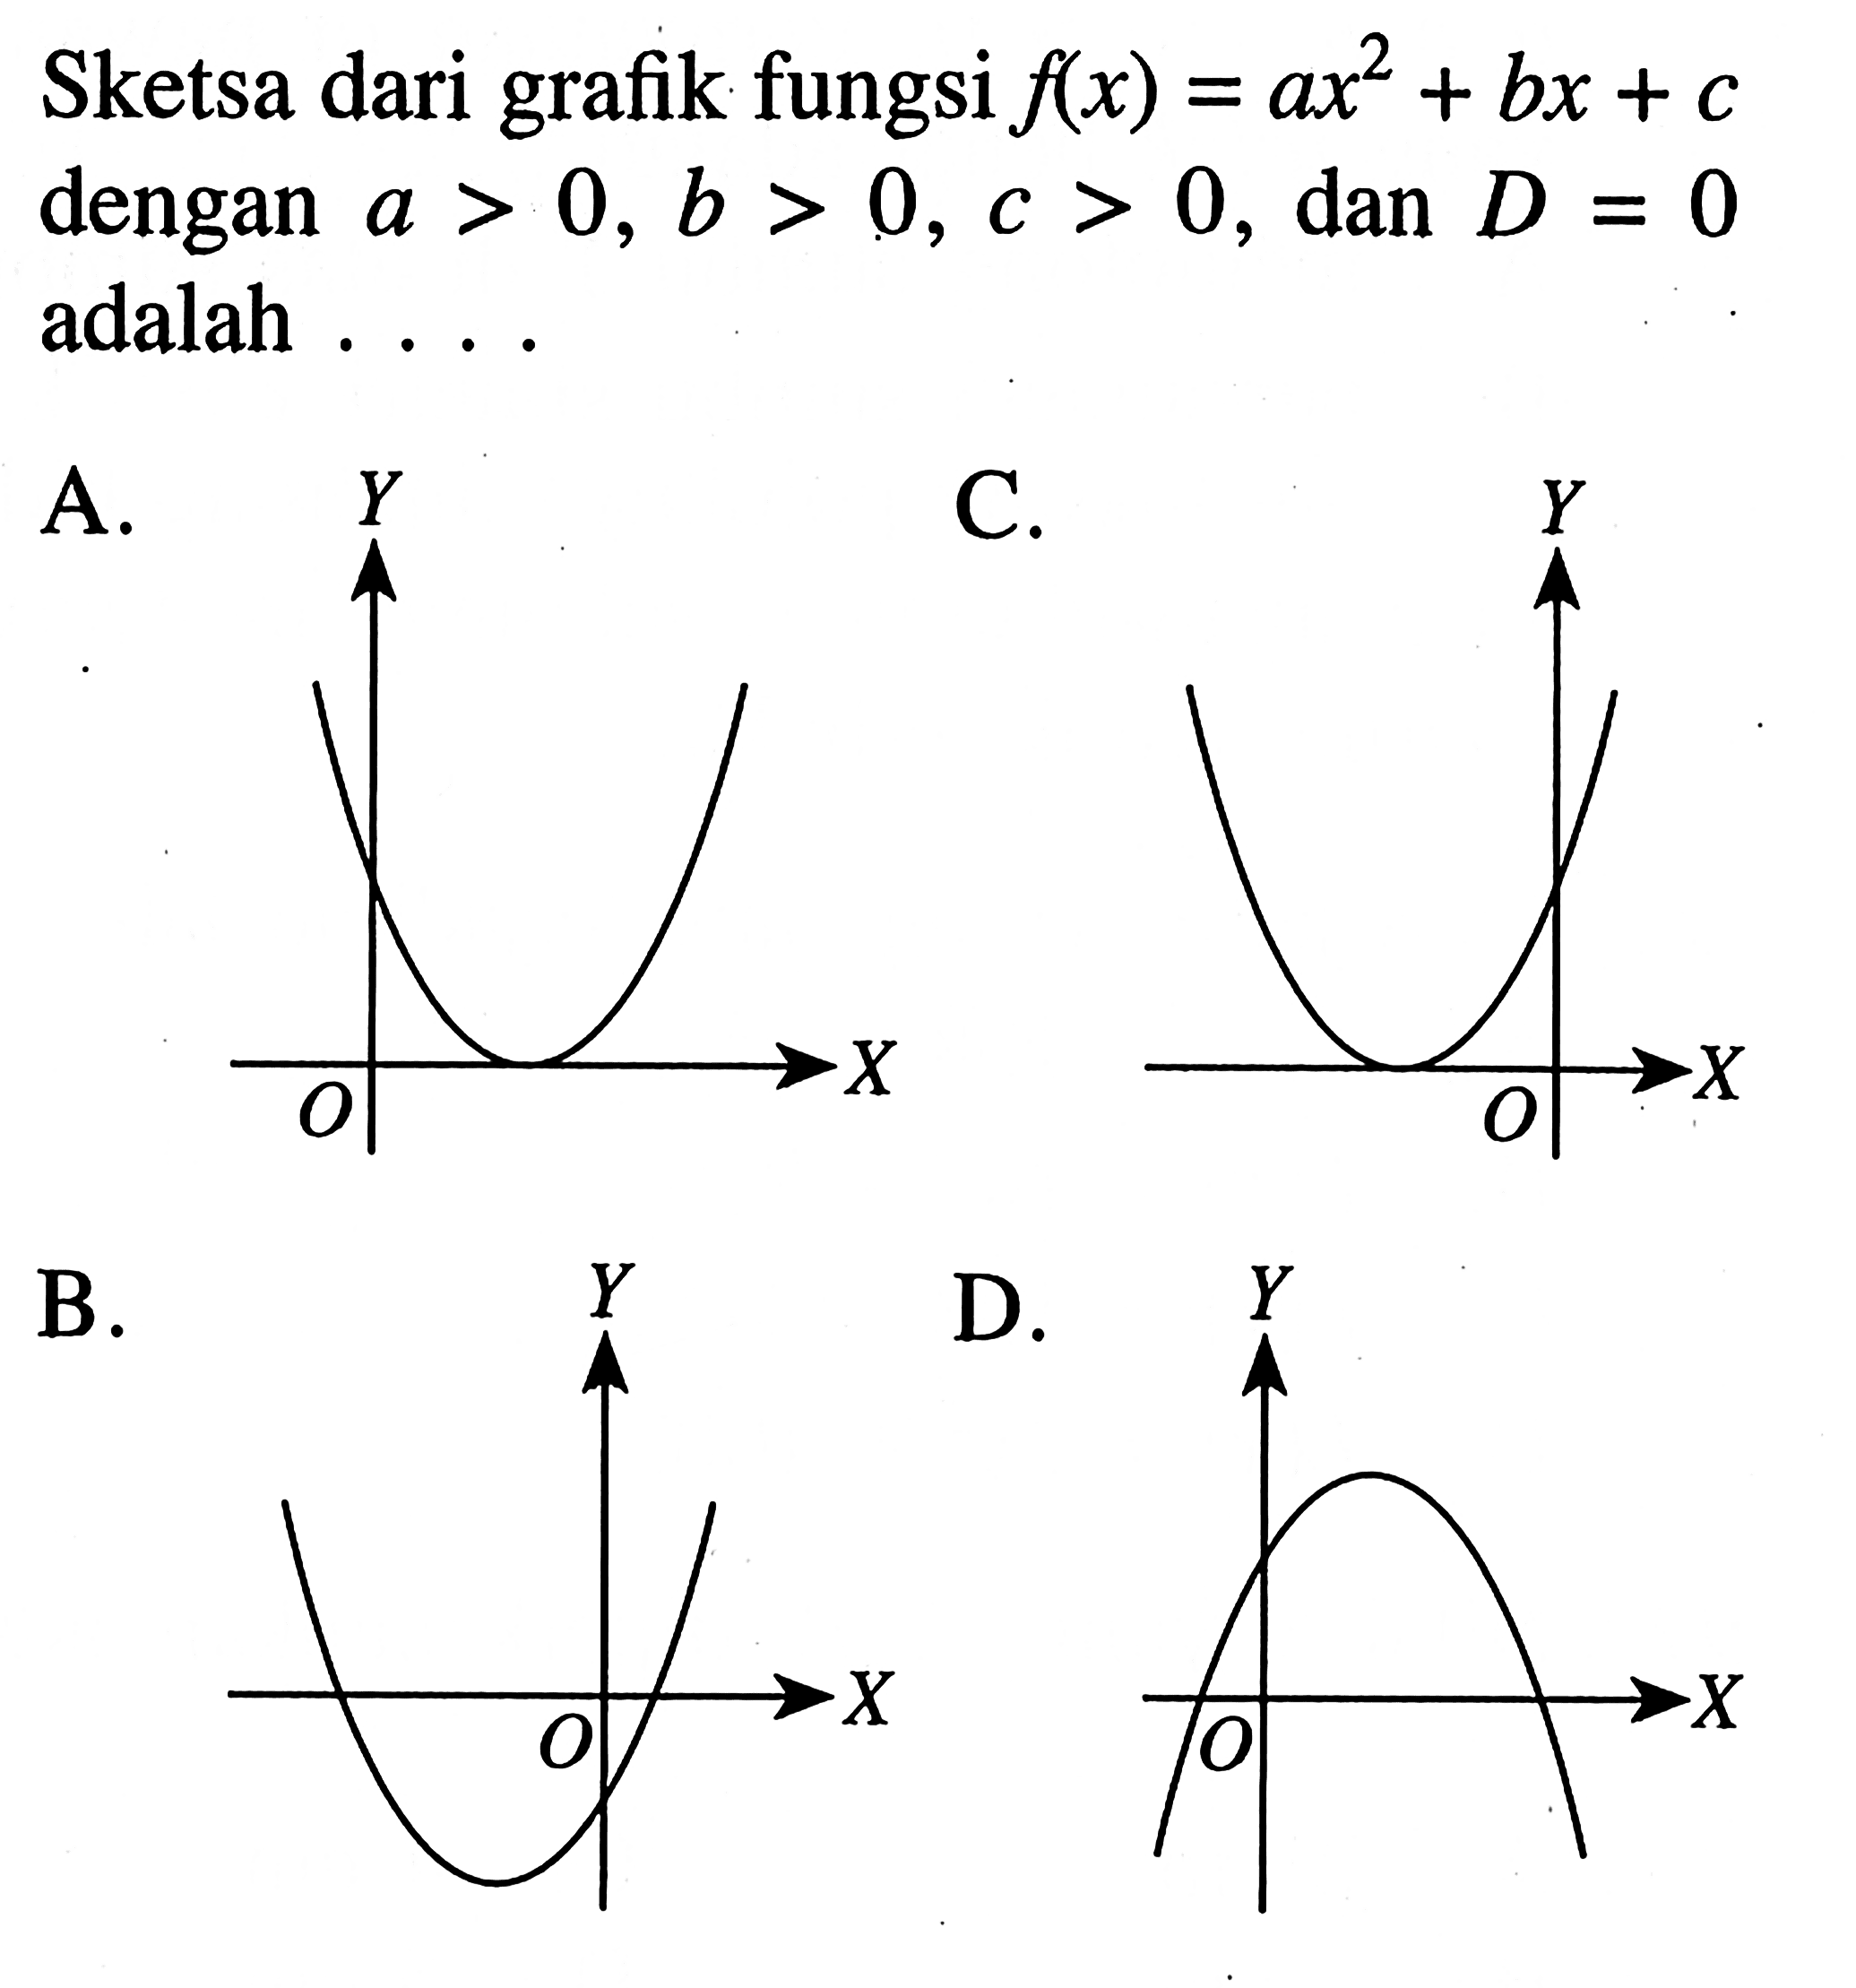 Sketsa dari grafik fungsi f(x) = ax^2 + bx + c dengan a > 0, b > 0, c > 0, dan D = 0 adalah...